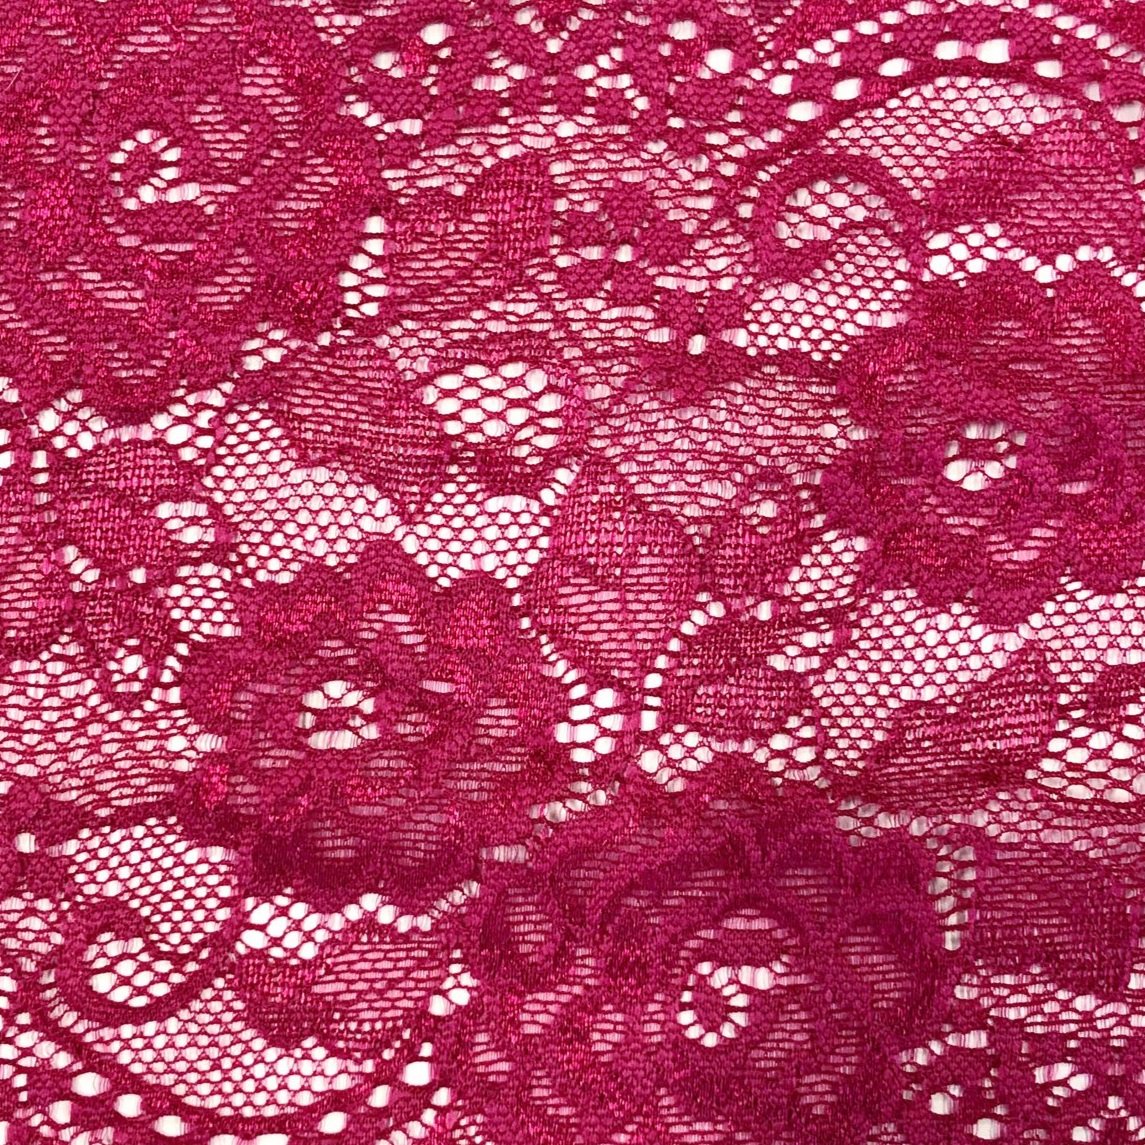 Burgundy Lace Bodysuit